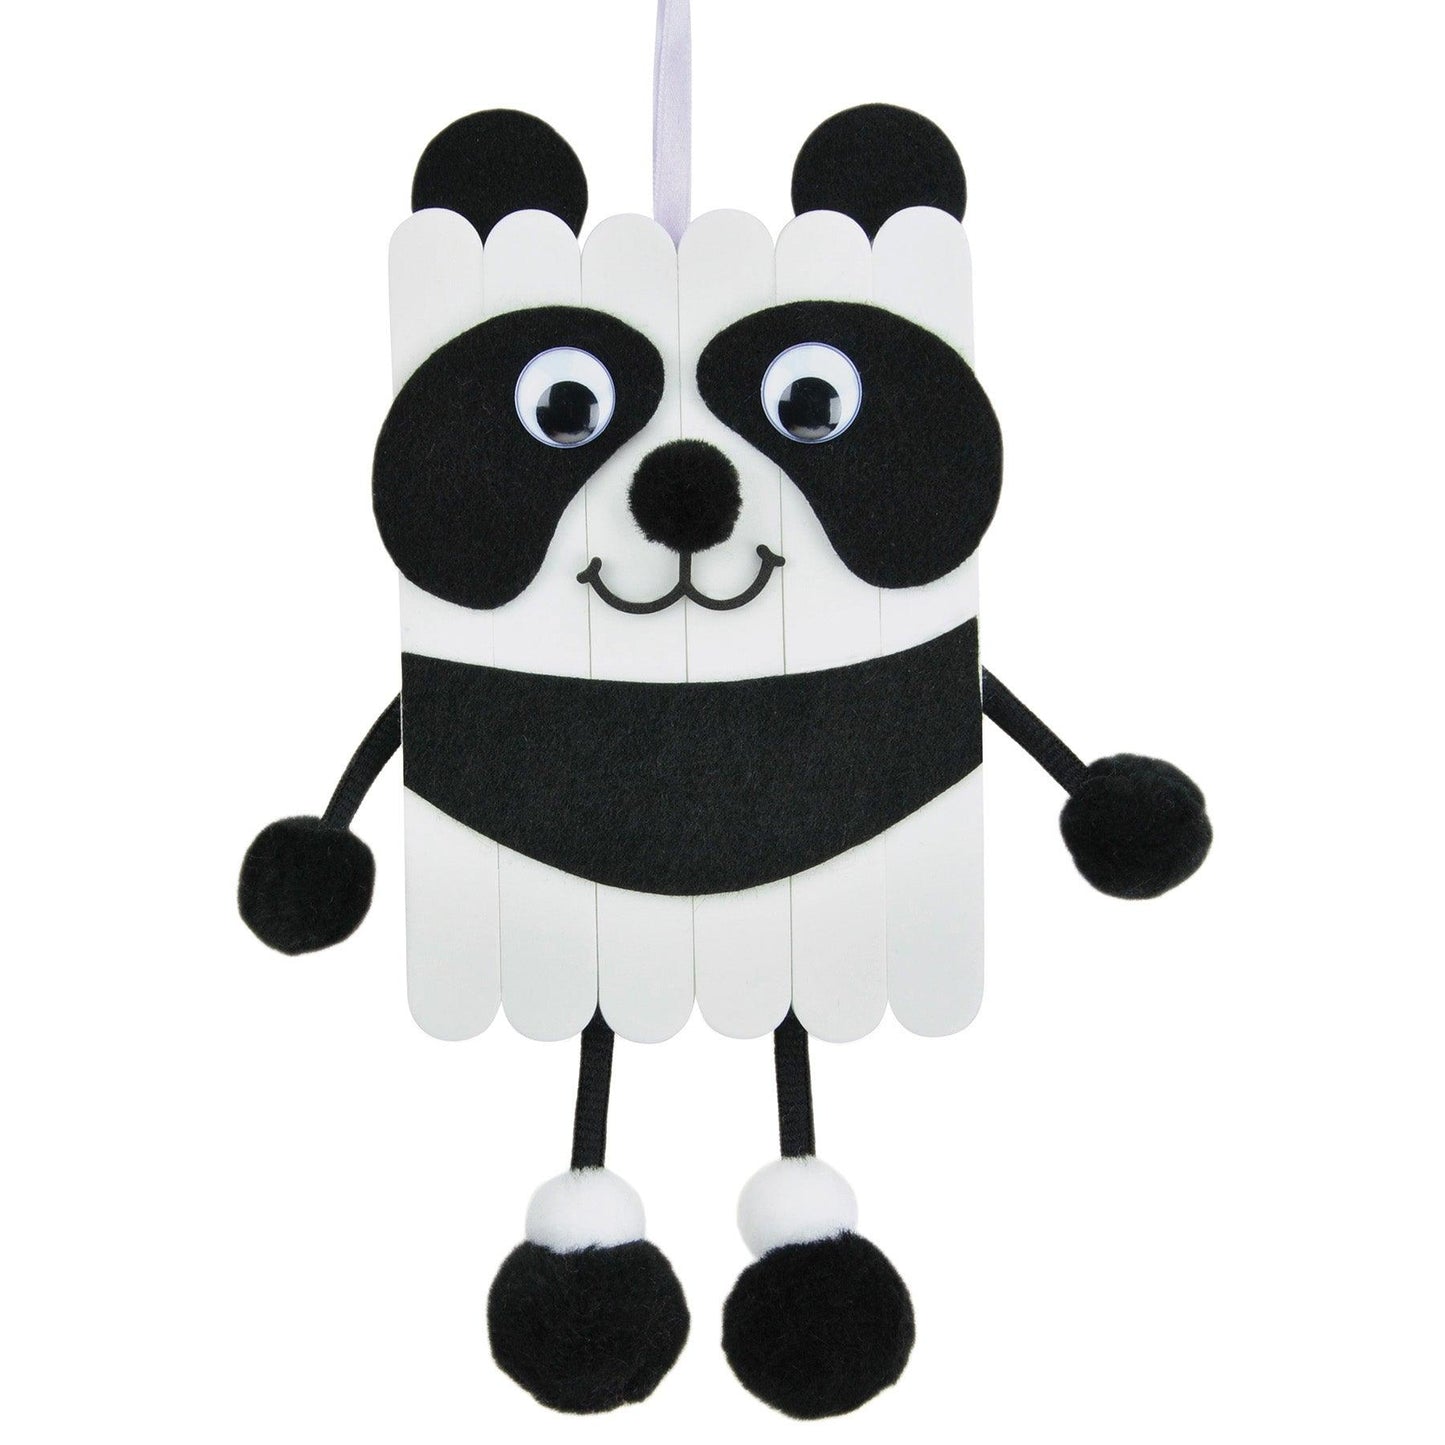 Foam Stick Animal Kit, Panda, 7" x 11.25" x 1", 6 Kits - Loomini